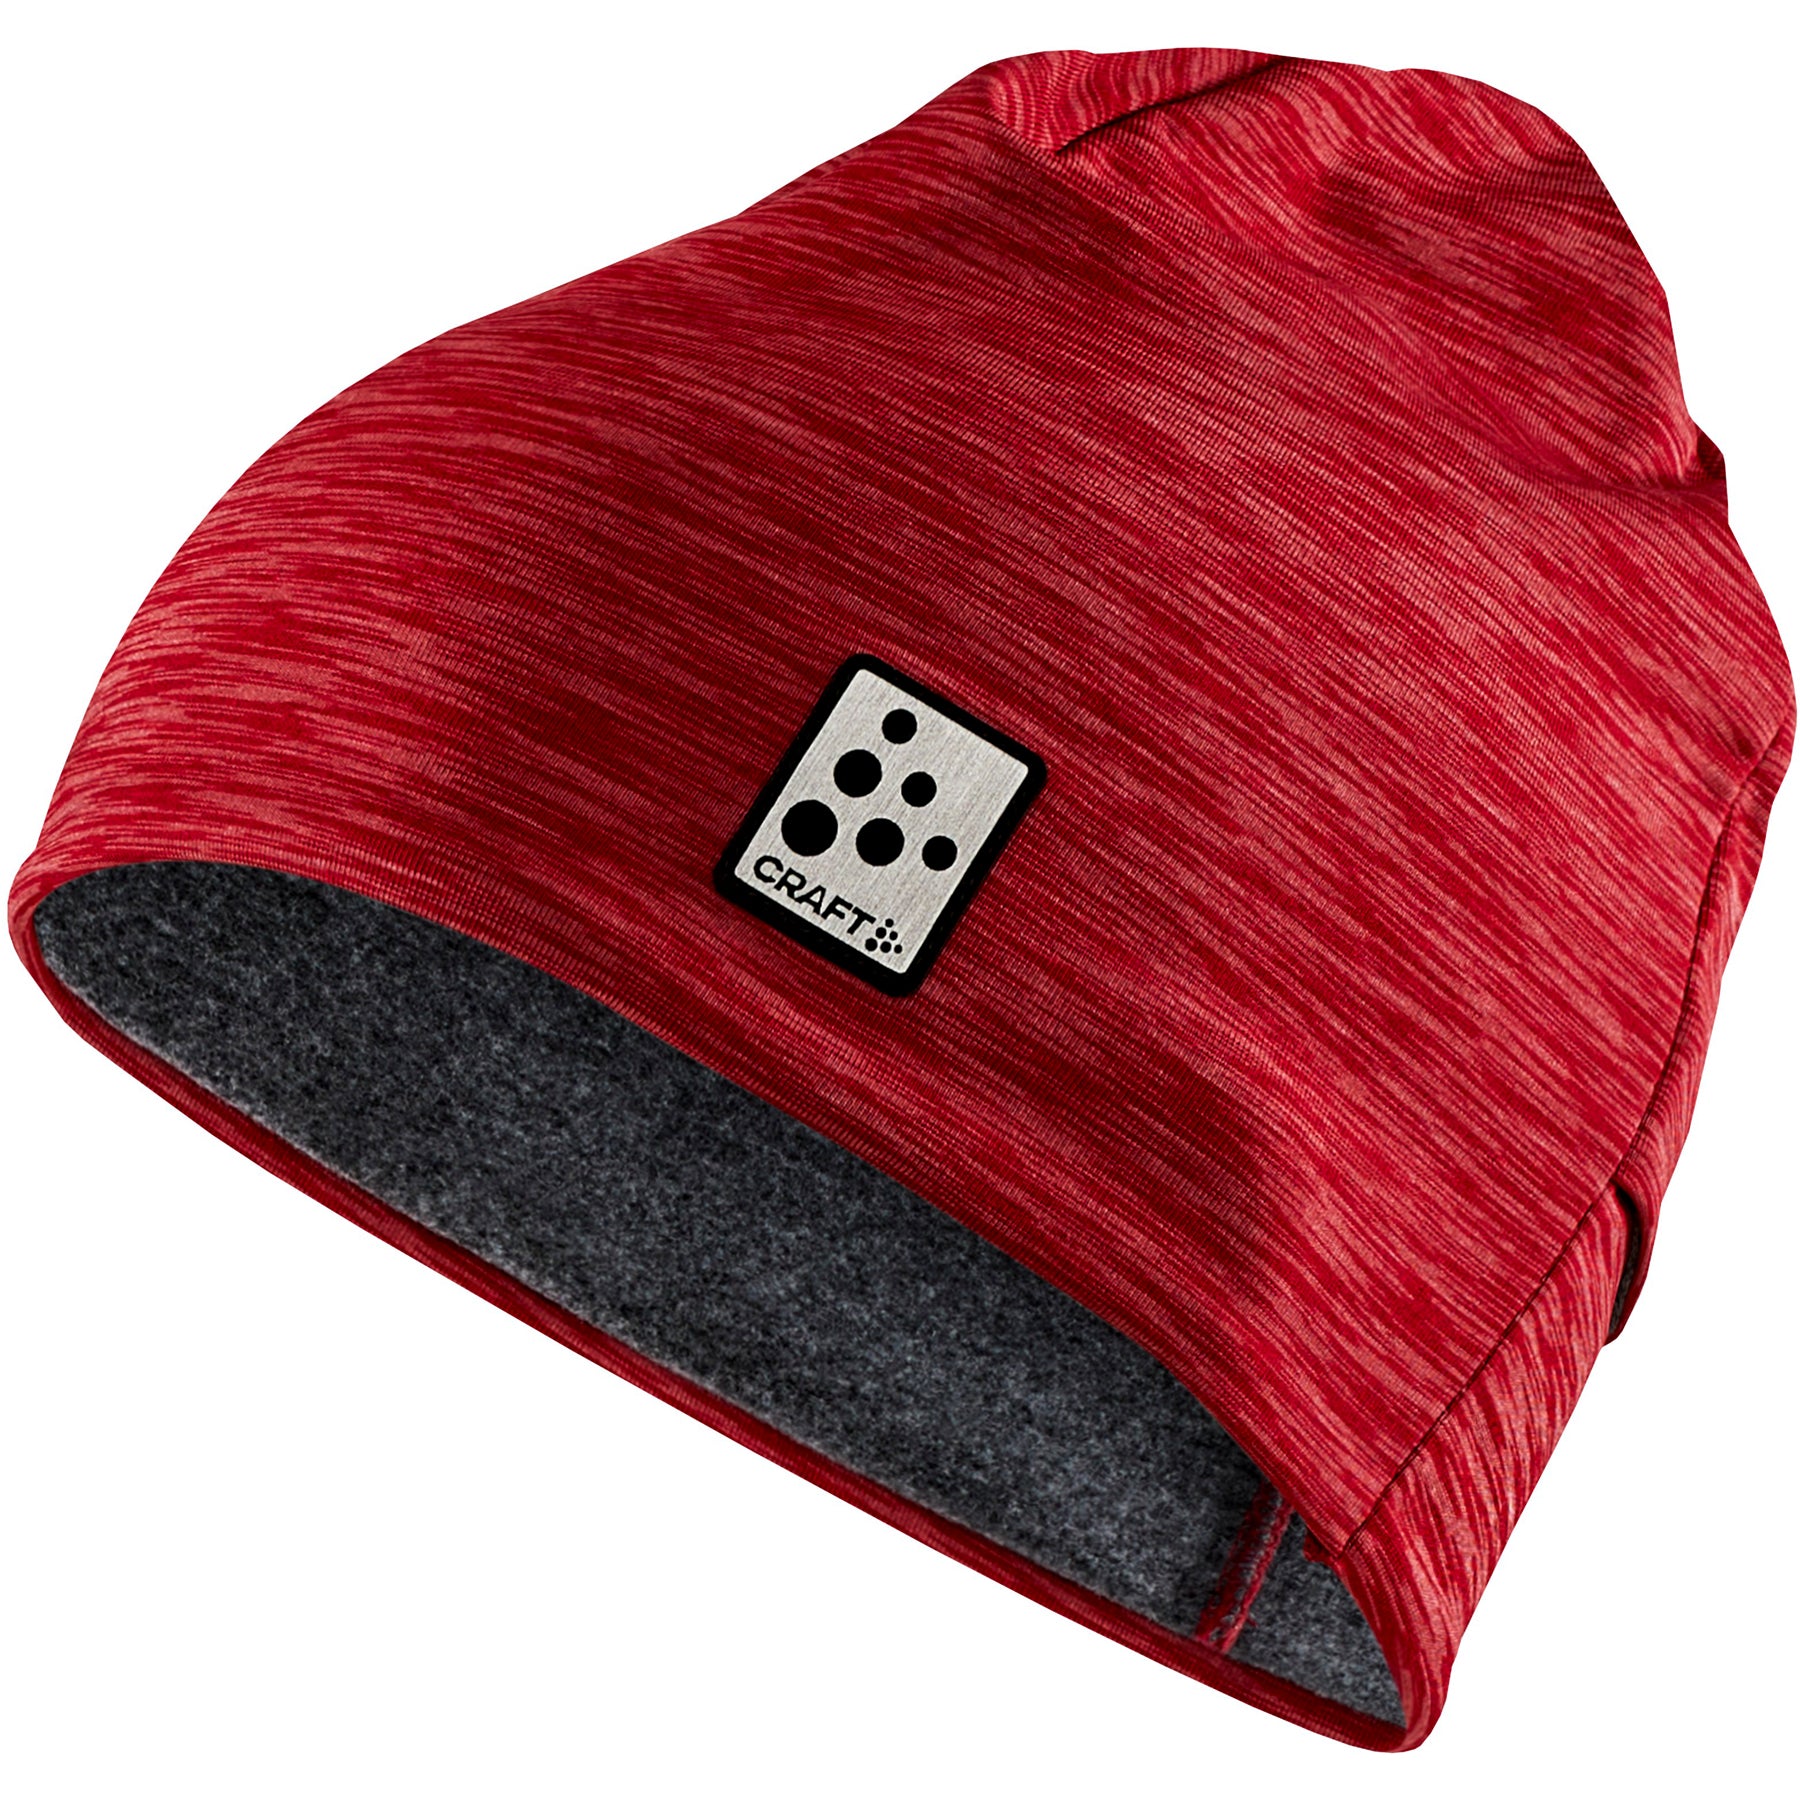 Buy rose-melange Craft Microfleece Ponytail Hat